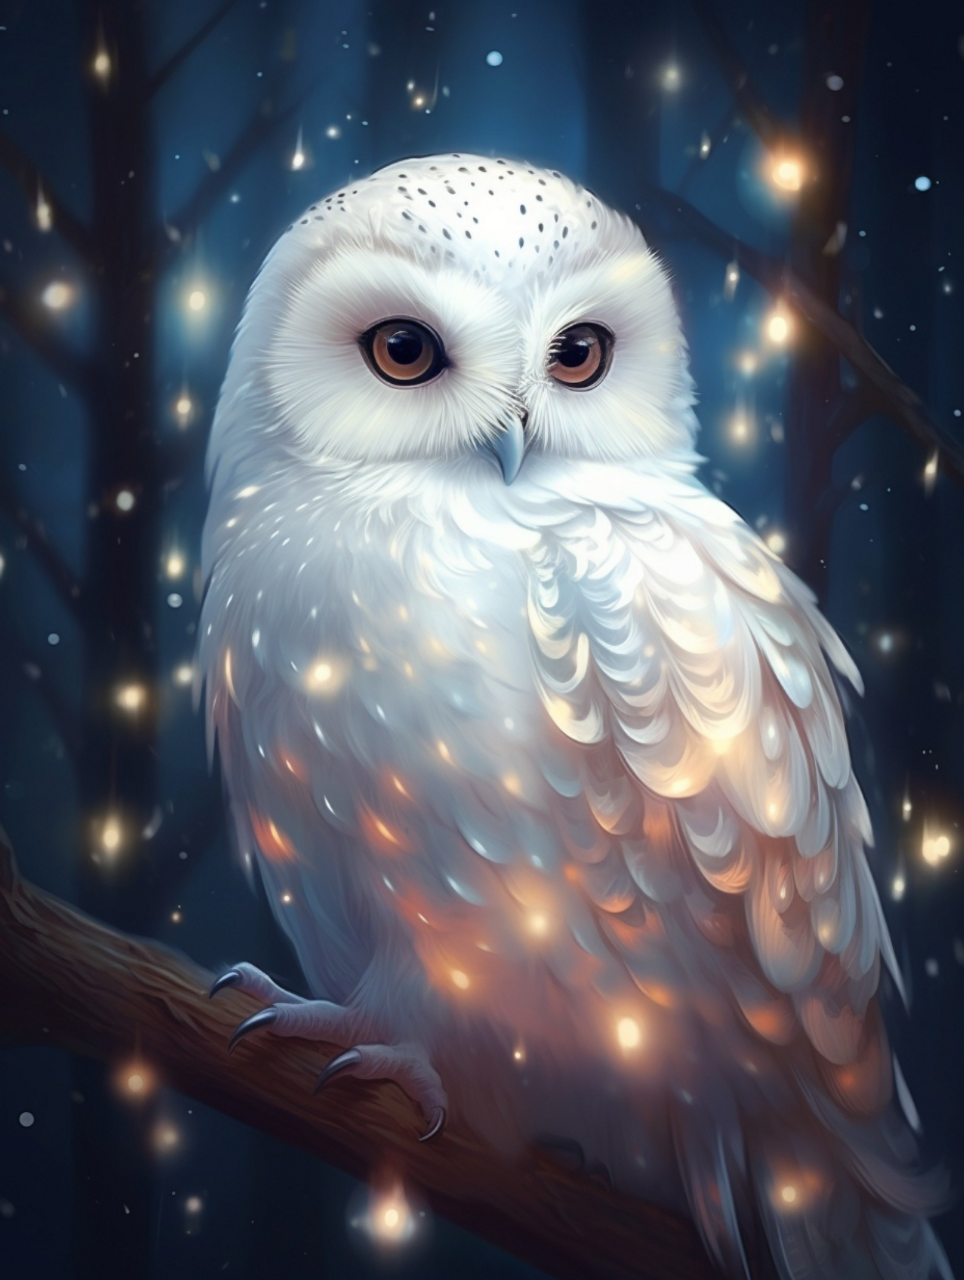 White Owl Diamond Painting Kit with Free Shipping – 5D Diamond Paintings